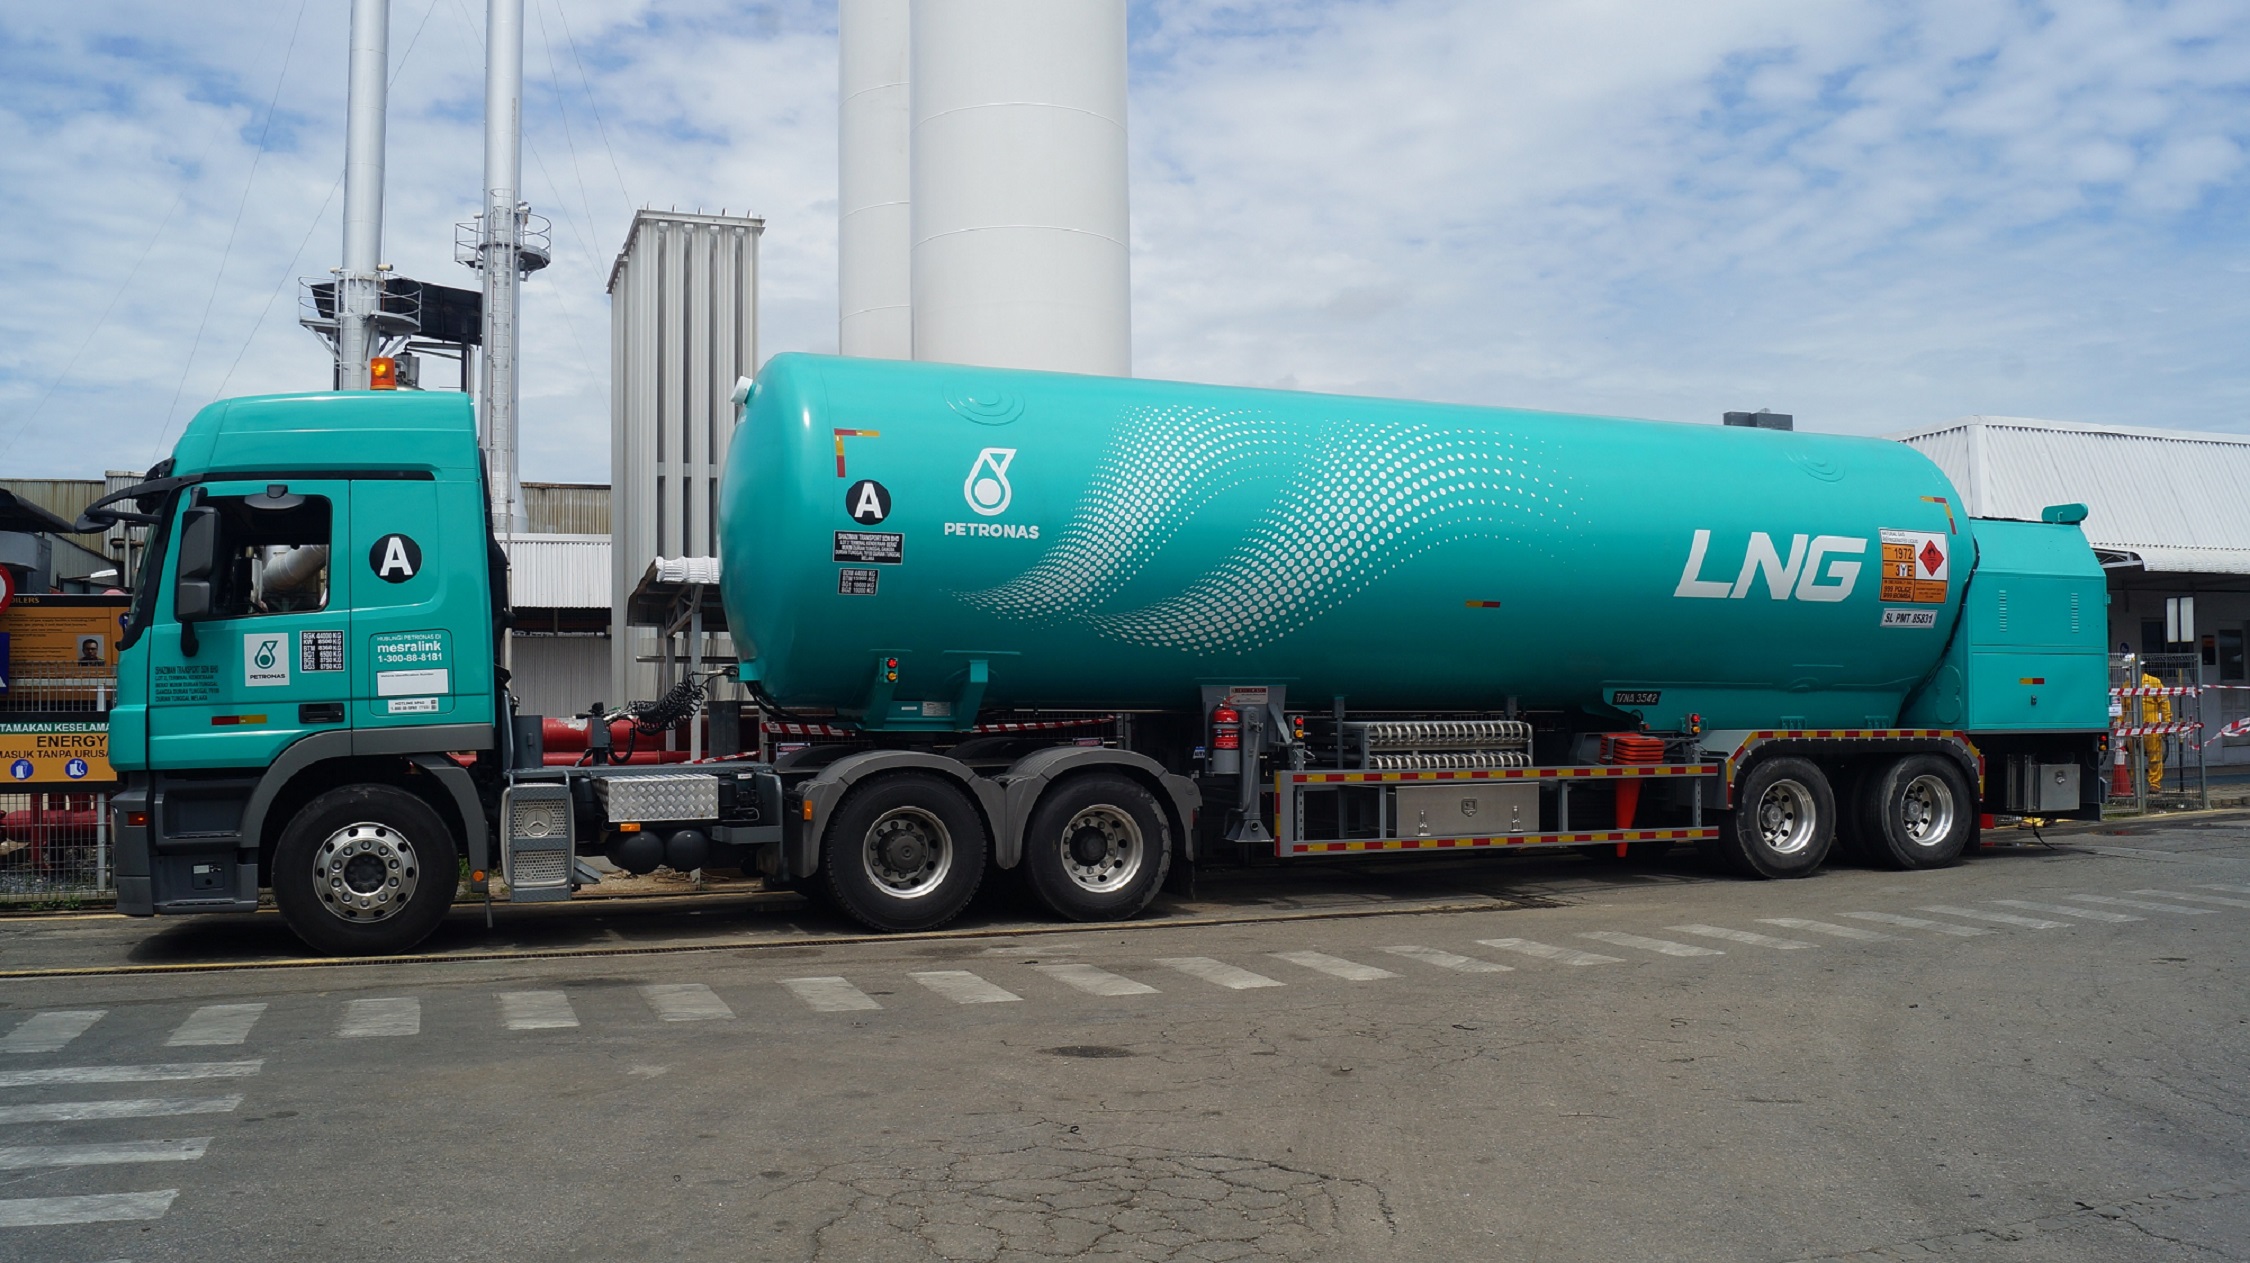 Malaysia's Petronas in LNG trucking milestone